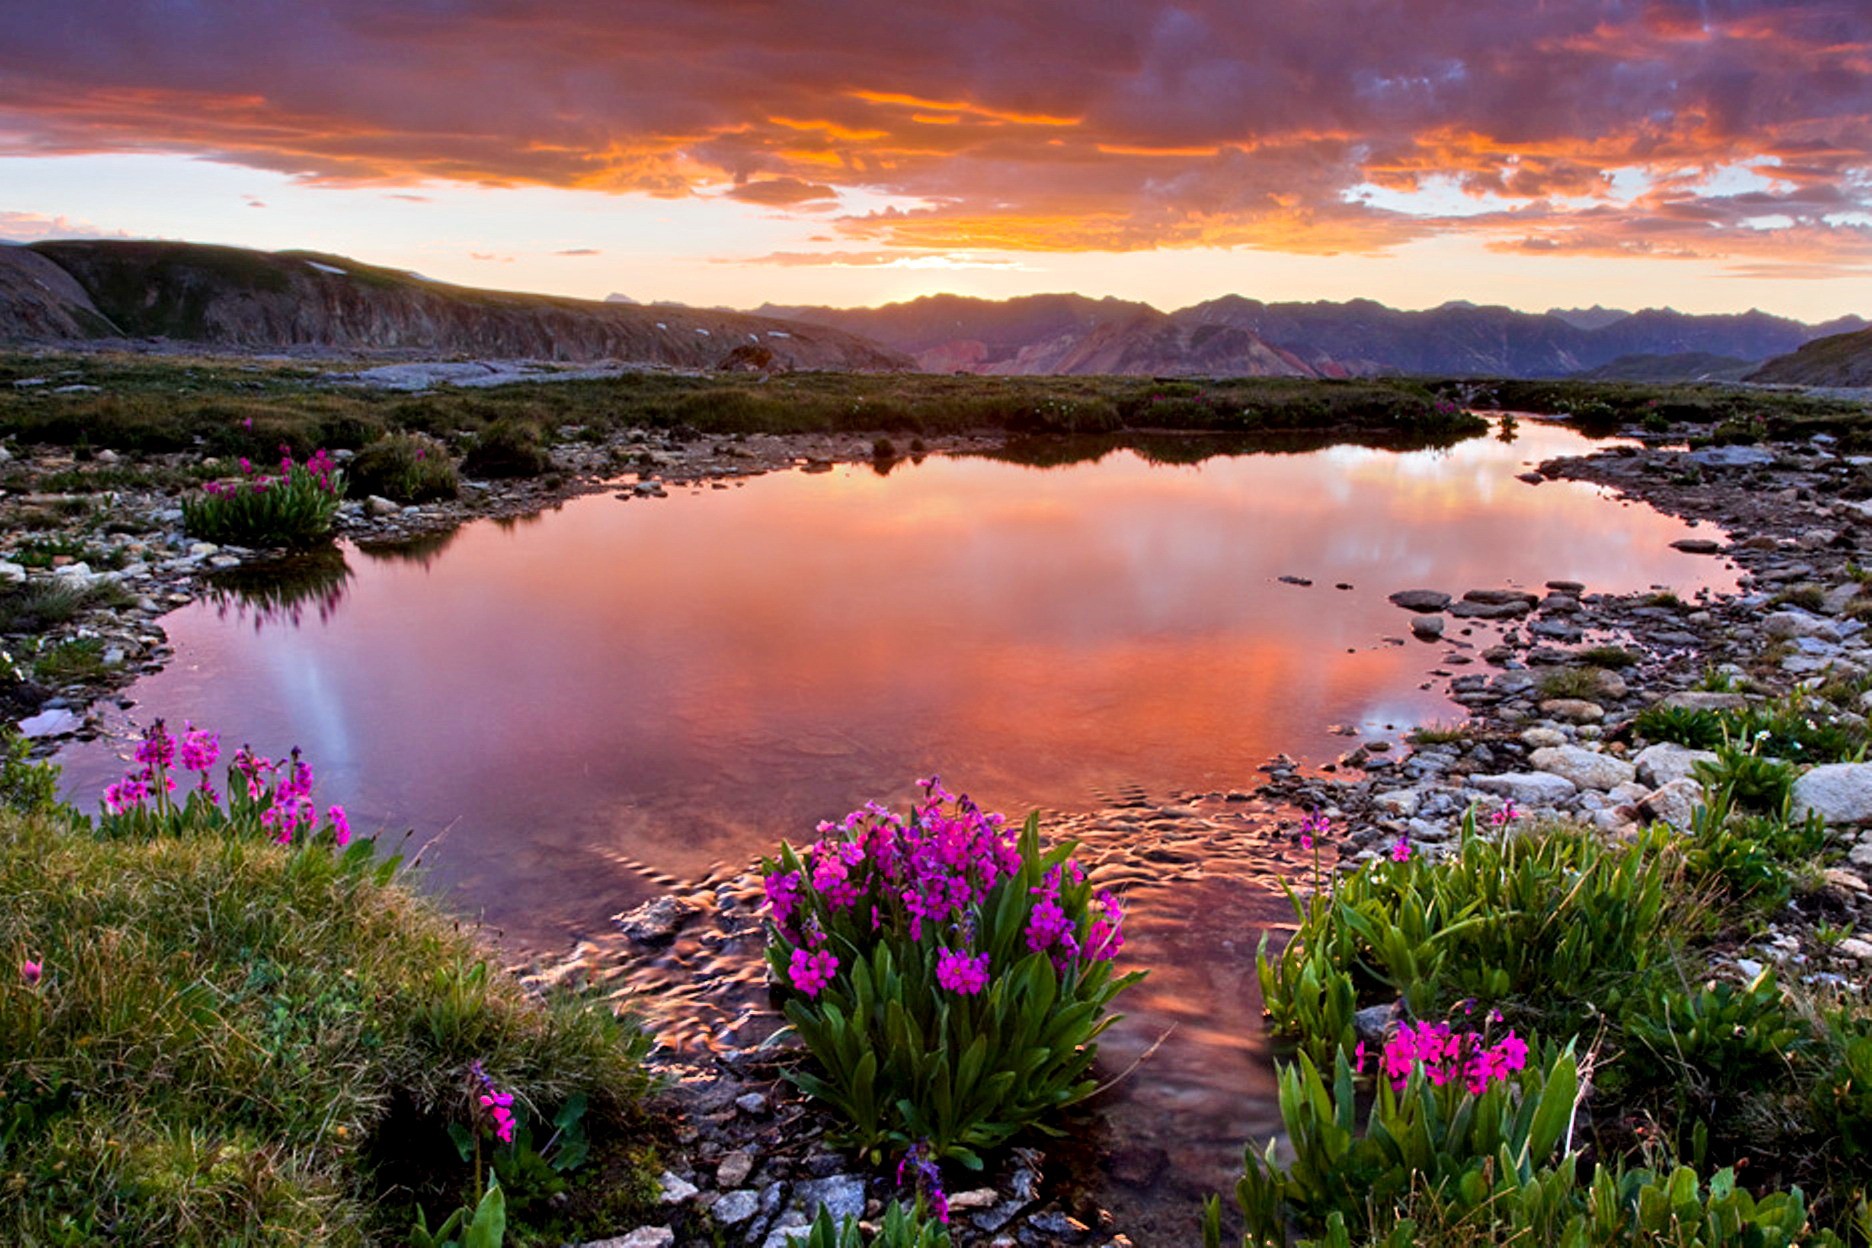 Wildflowers at Mountain Lake by Chris Kayler